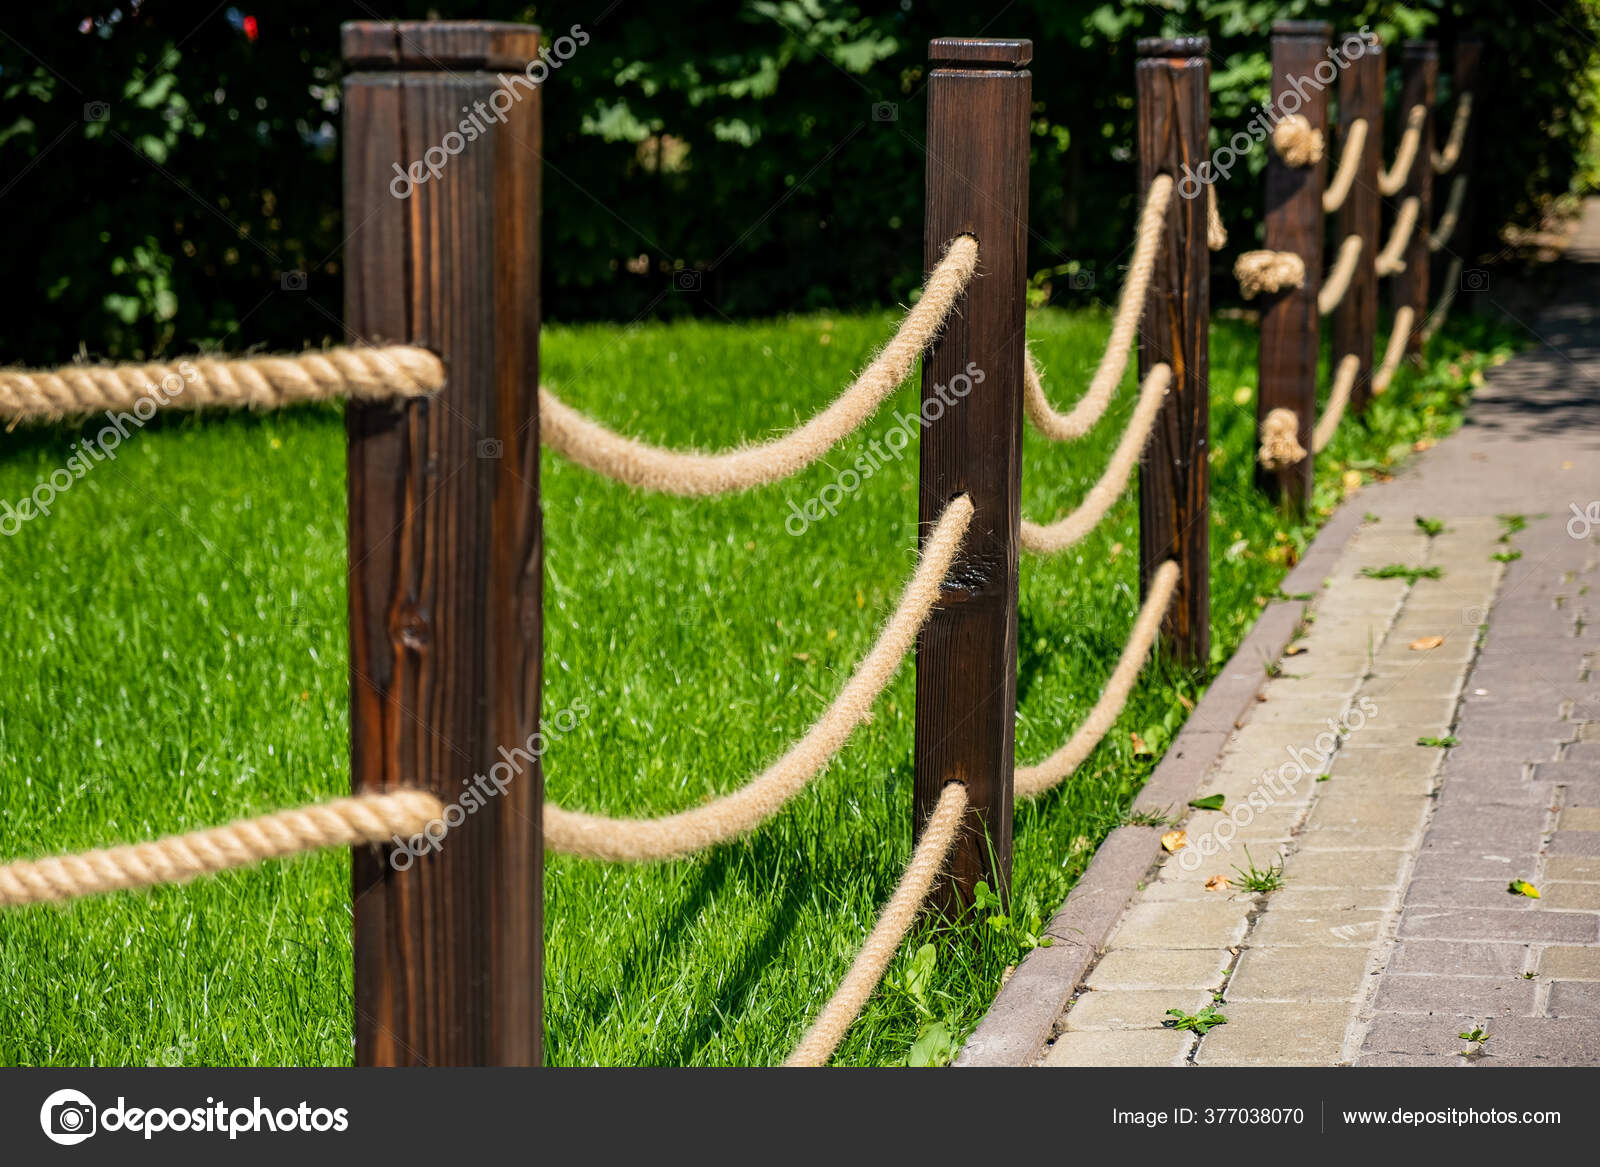 https://st3.depositphotos.com/22346942/37703/i/1600/depositphotos_377038070-stock-photo-small-decorative-fence-fence-made.jpg